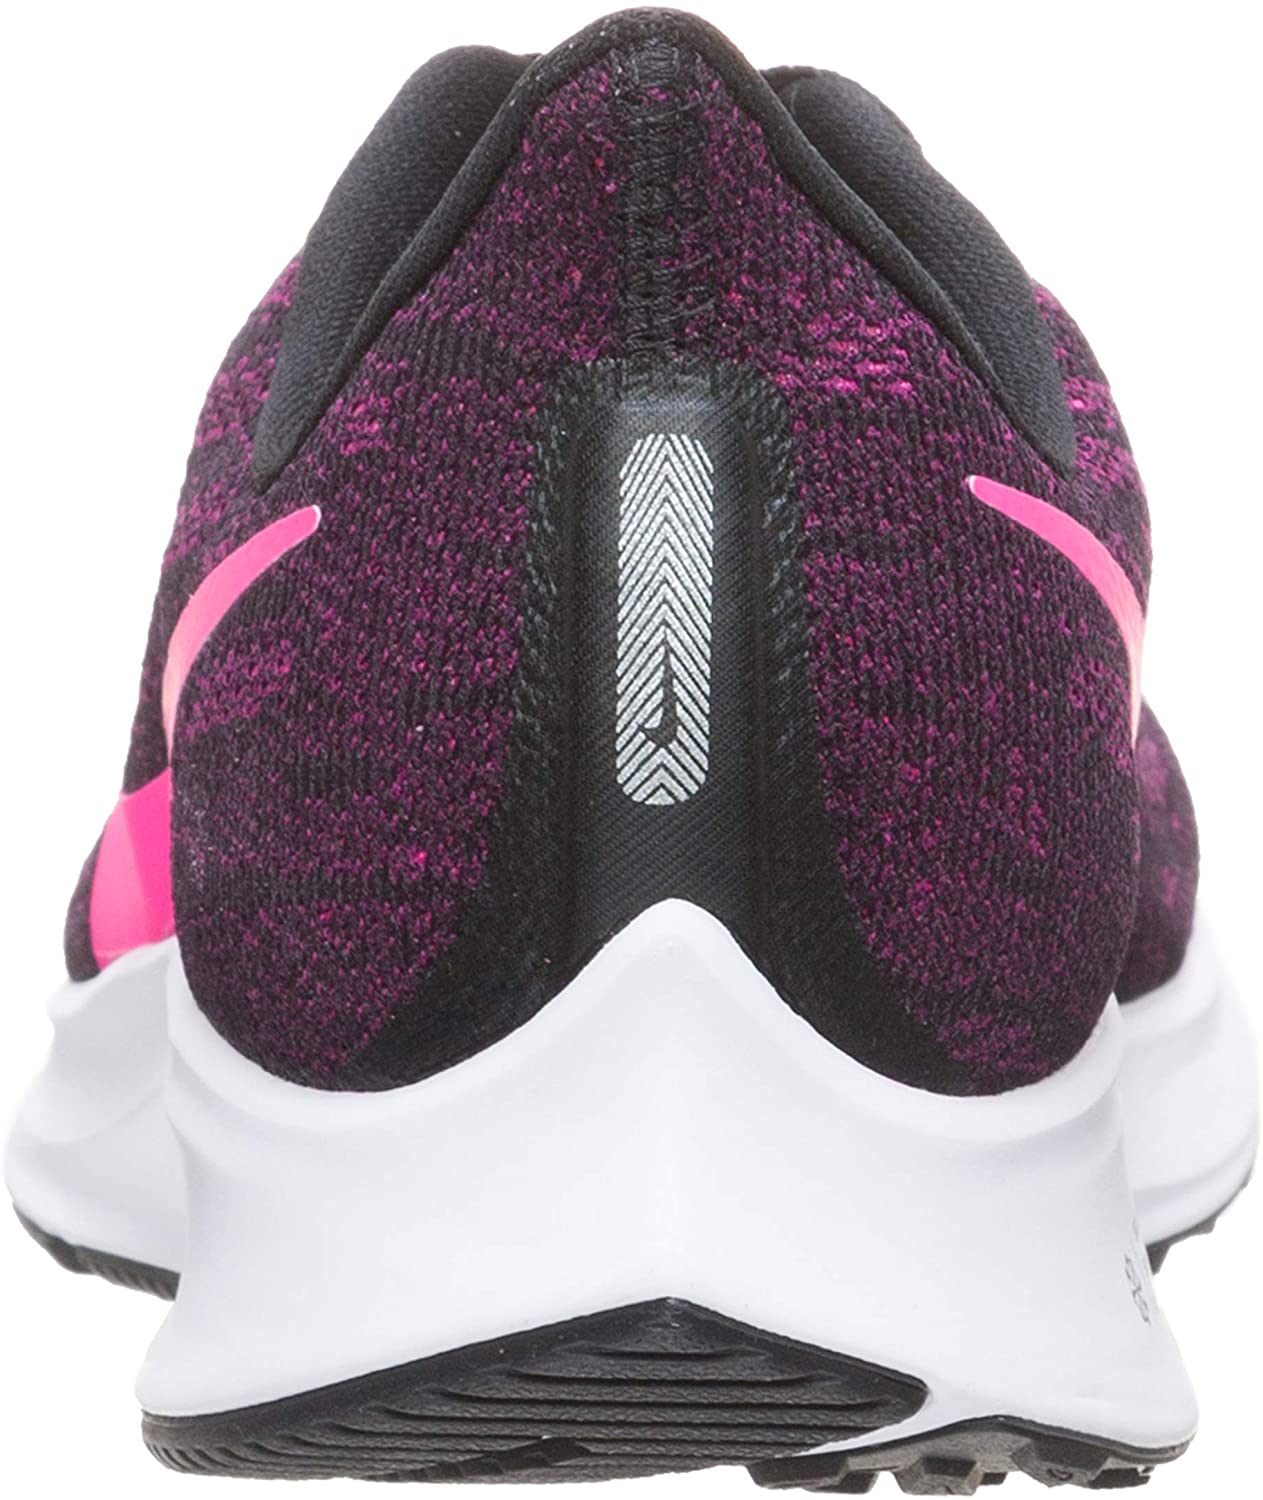 Nike Women's Air Zoom Pegasus 36 Running Shoe, Black/Pink/Berry, 8.5 B(M) US - image 2 of 7